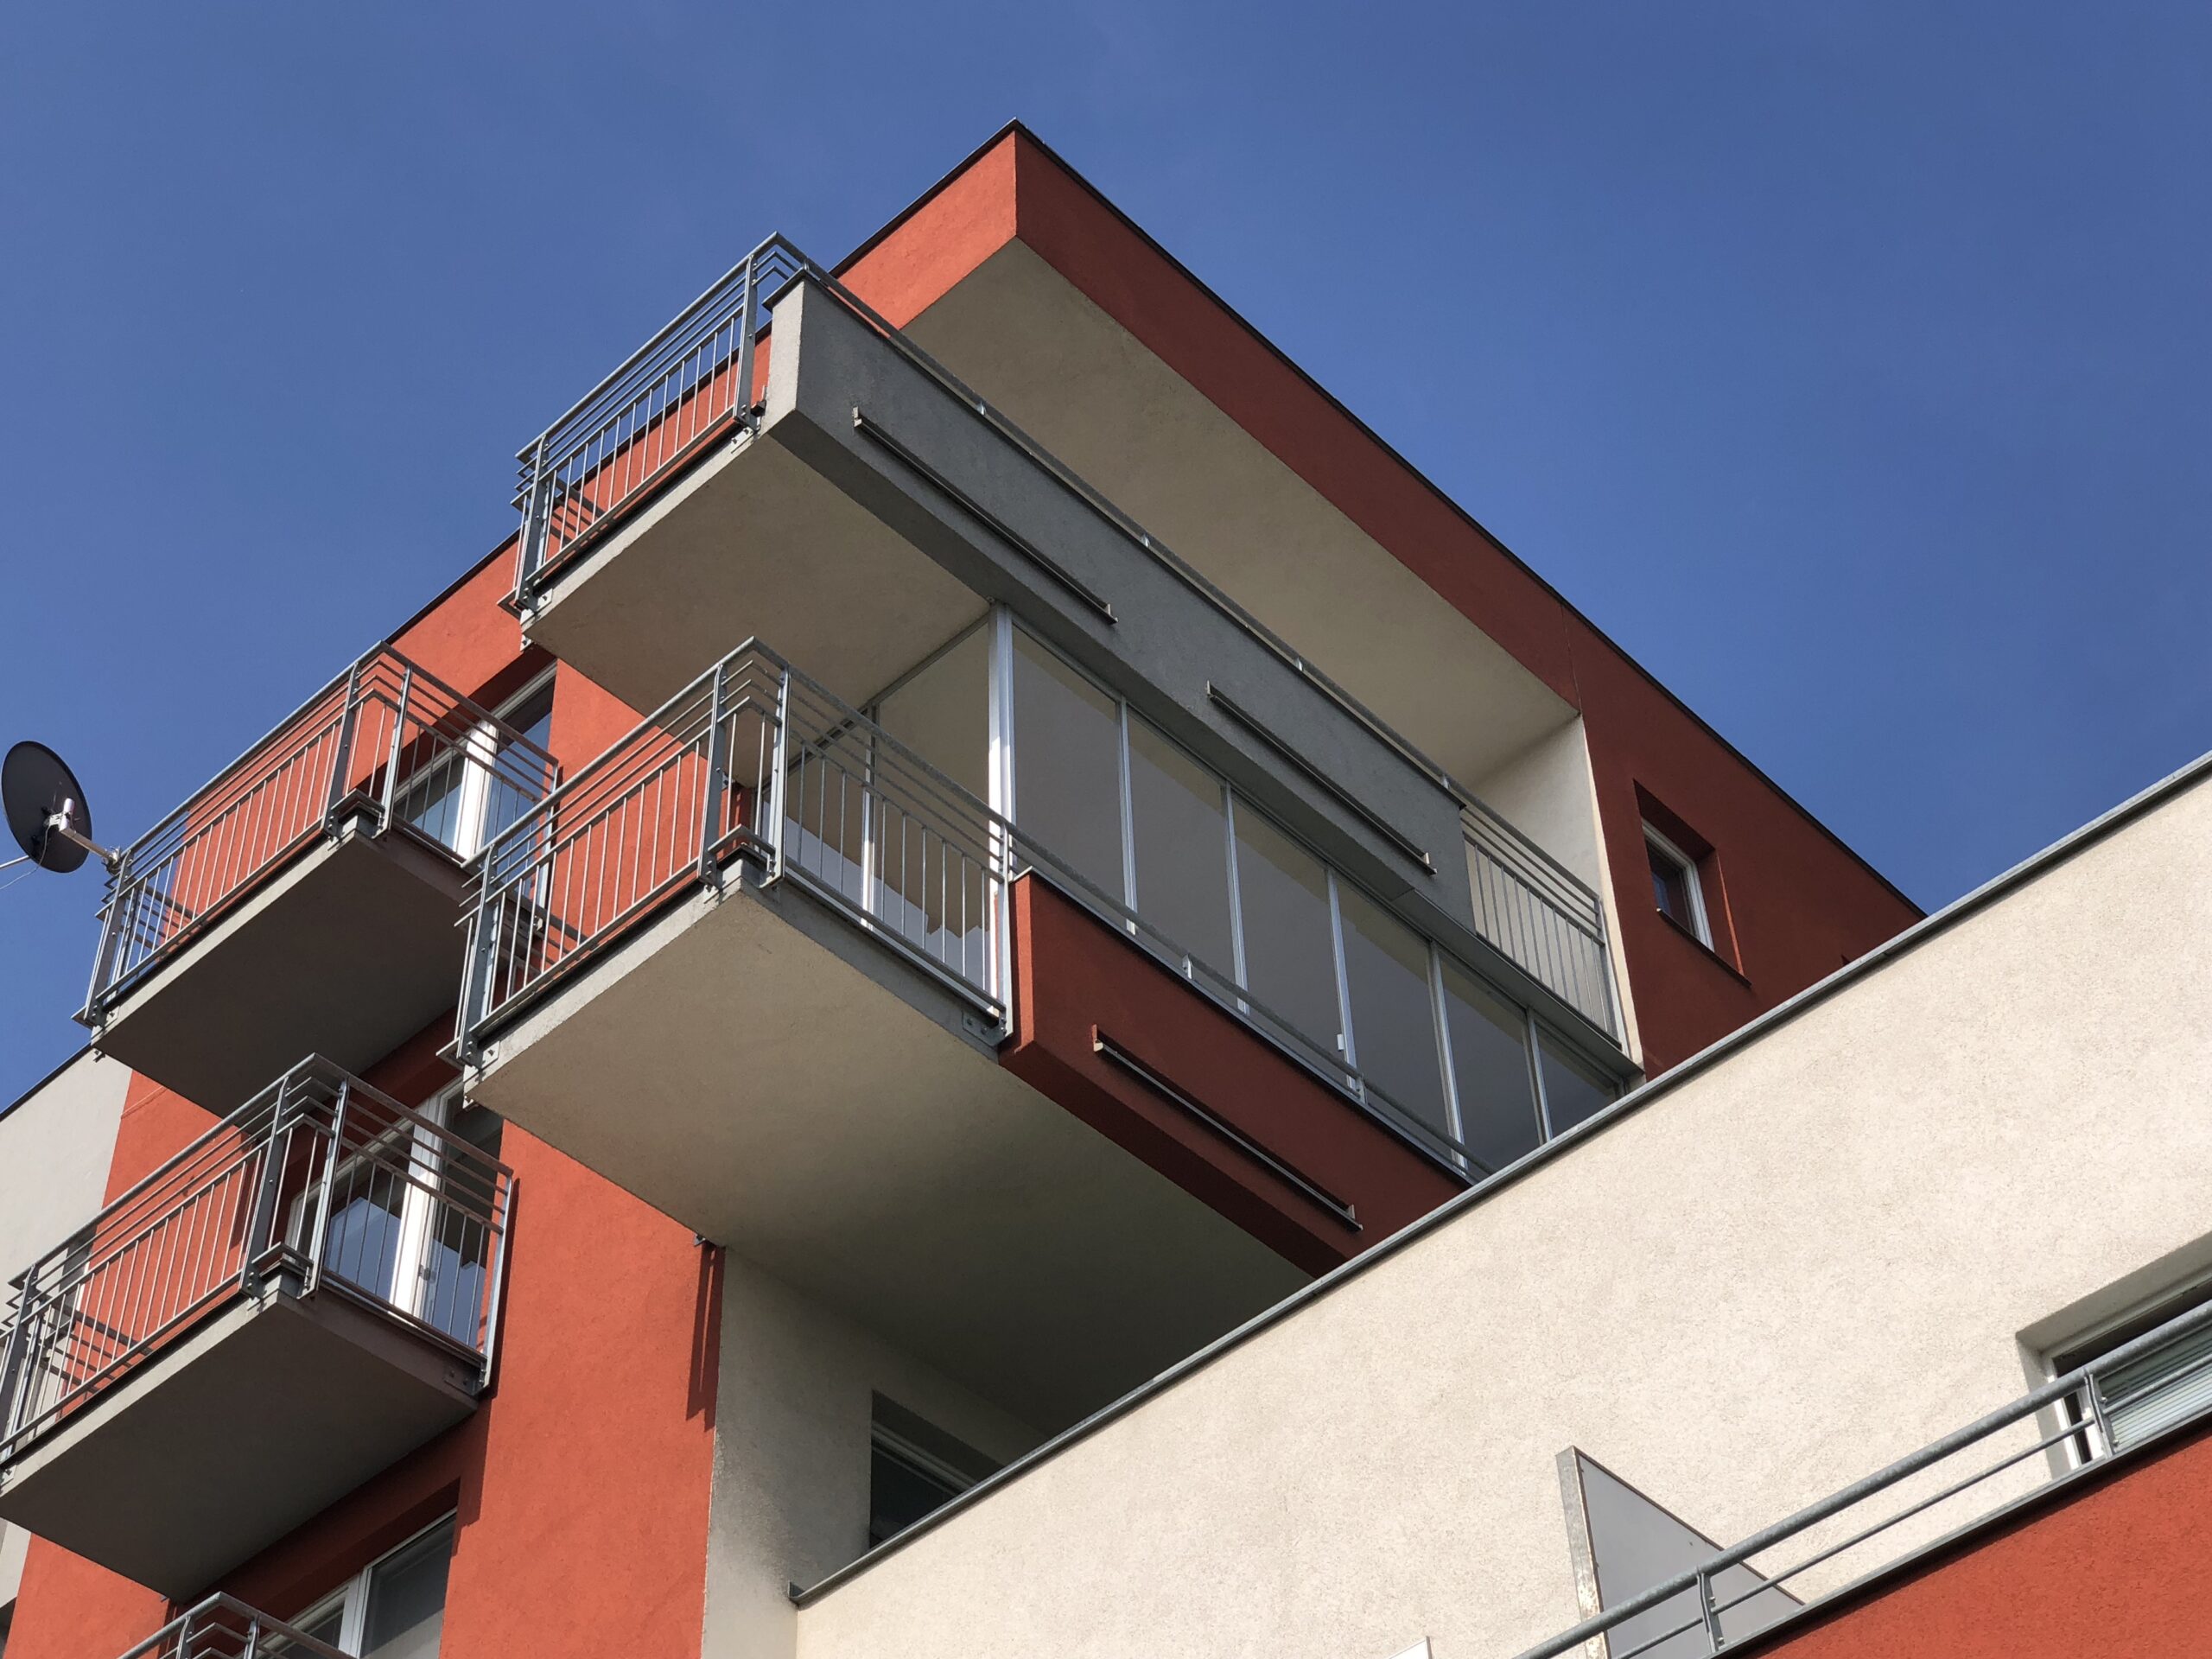 Bydlení Jeřábek – Specialisté na zasklení balkonů a lodžií